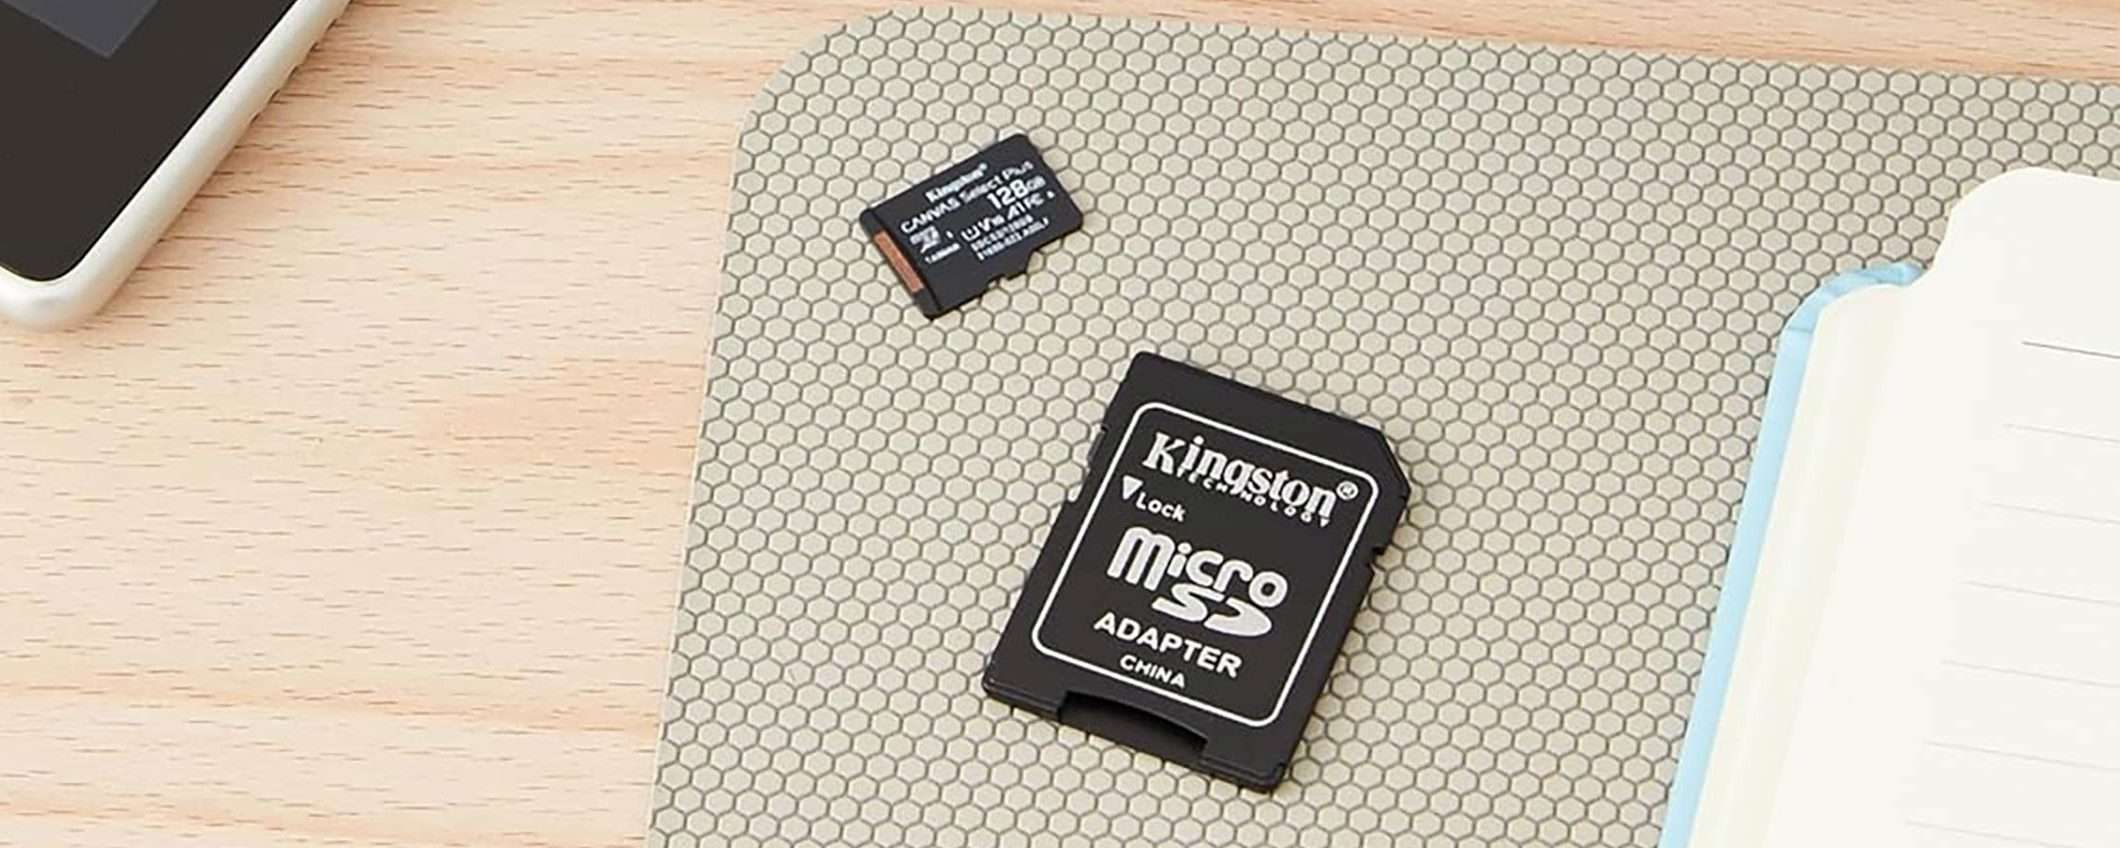 Kingston, microSD 128 GB: PREZZO STRACCIATO su Amazon